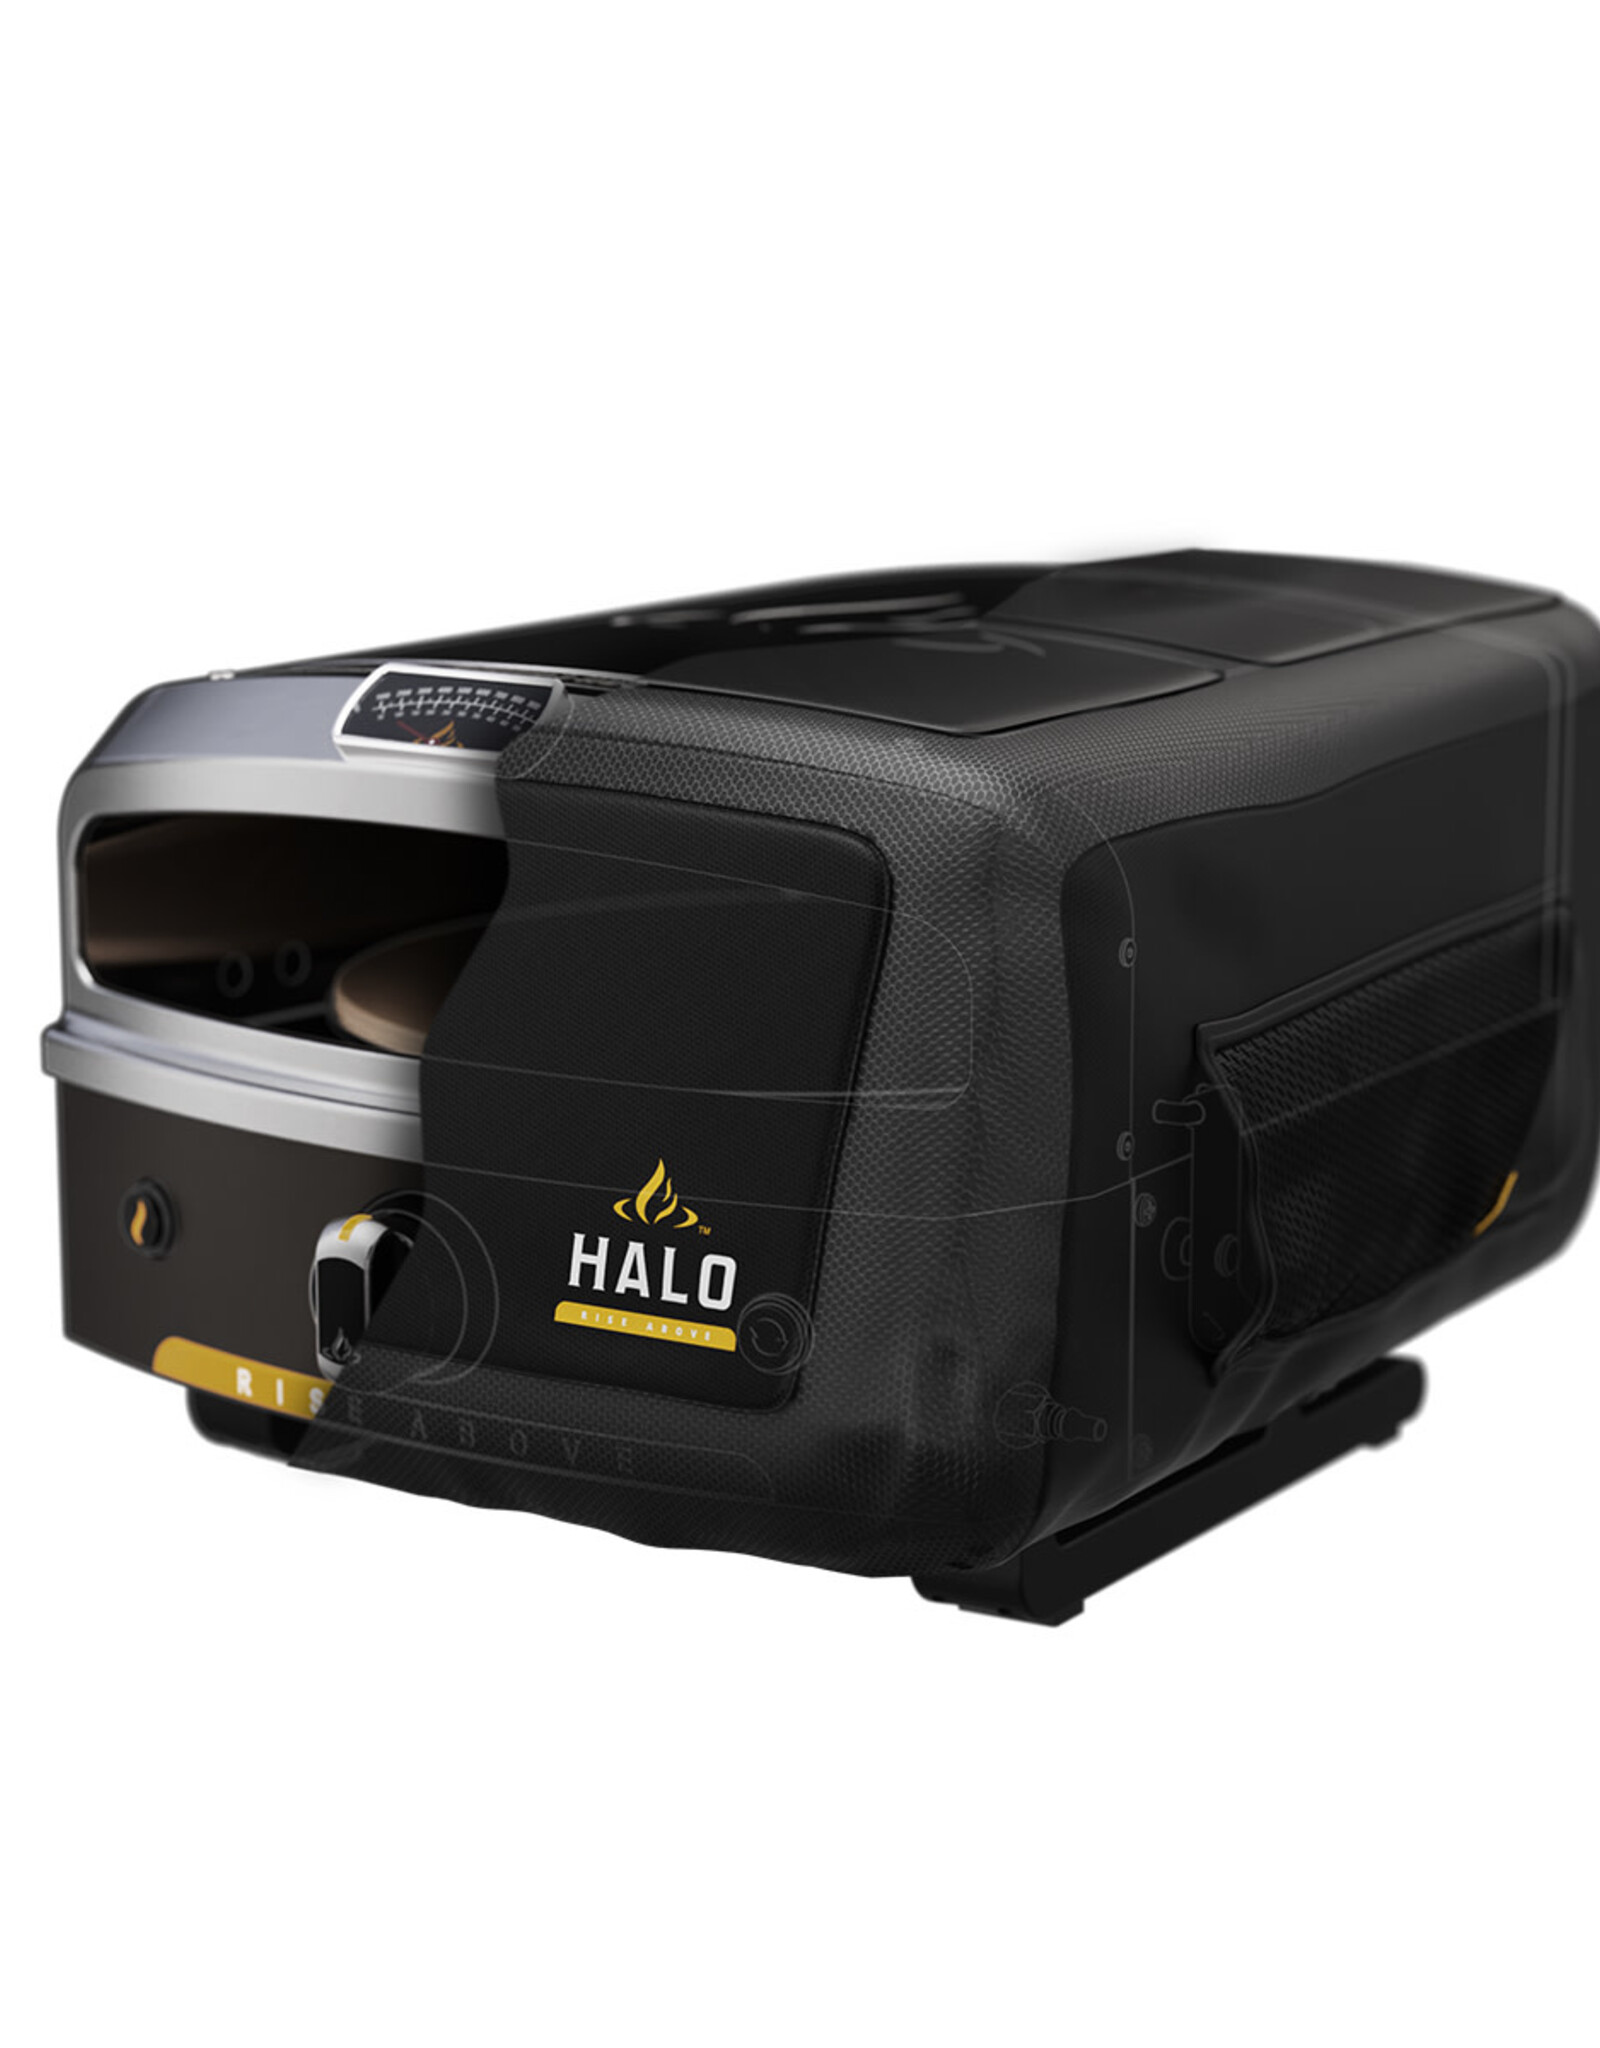 Halo Halo Versa 16 Pizza Oven Cover